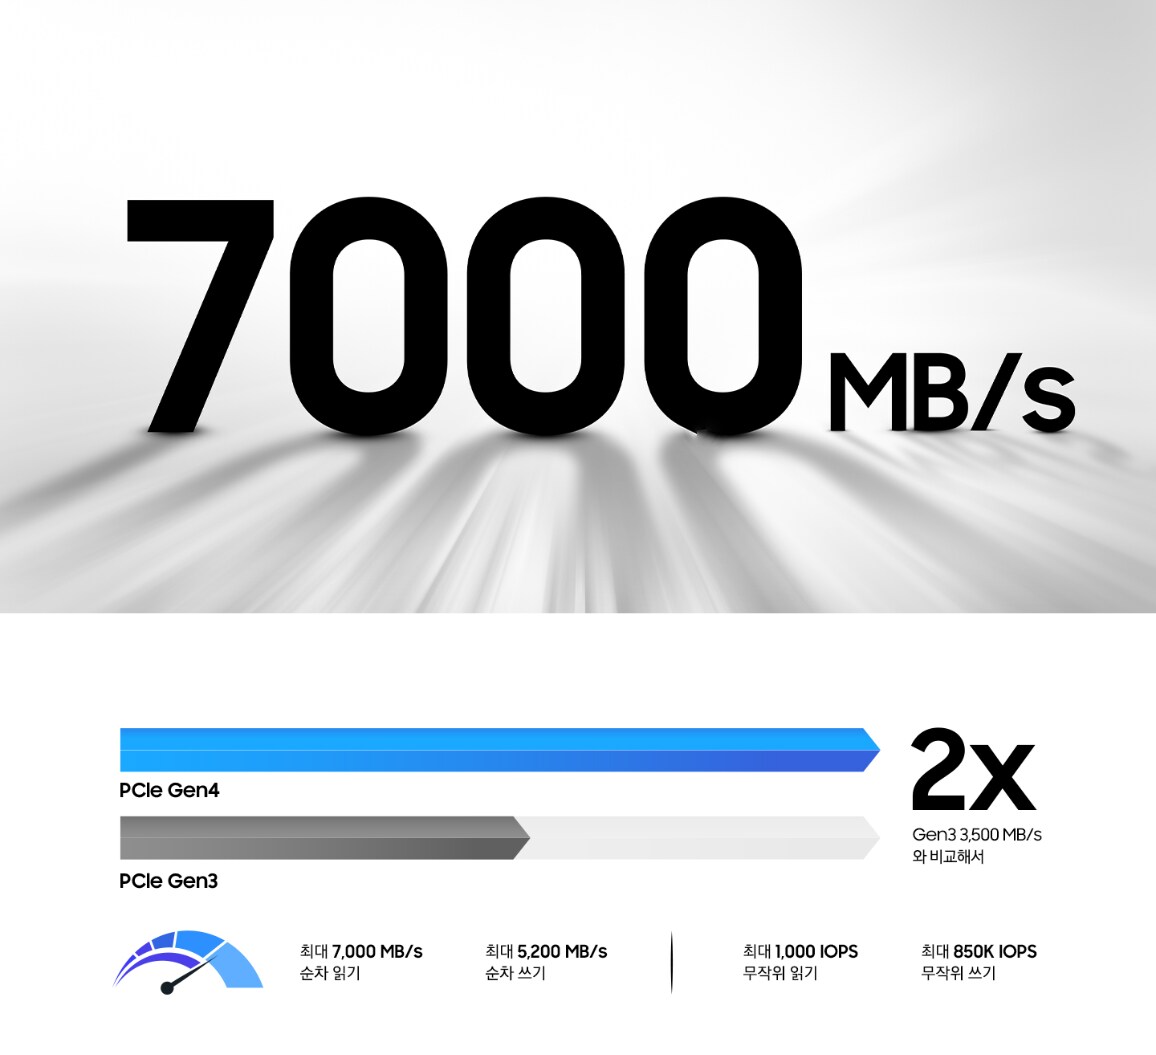 50 % 이상 빨라진 Gen4의 최대 시퀀셜 리드 속도, 7,000 MB/s를 보여주는 이미지